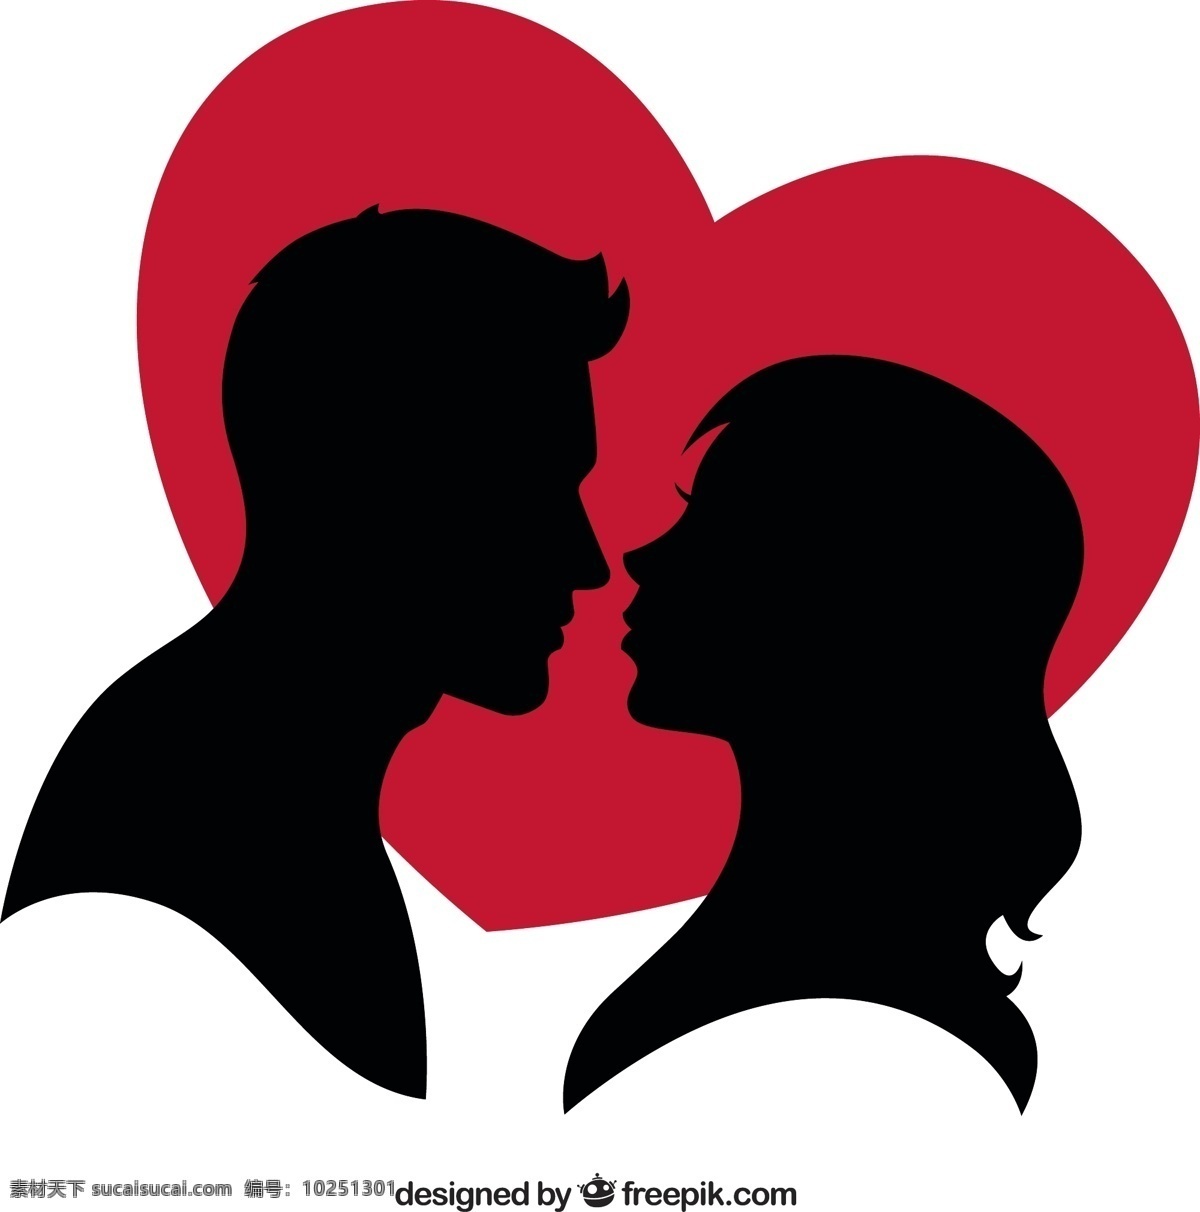 一对 夫妇 一个 红色 心 轮廓 爱 情人节 红色的剪影 情侣 浪漫 情人 剪影 相爱的情侣 恋爱 白色